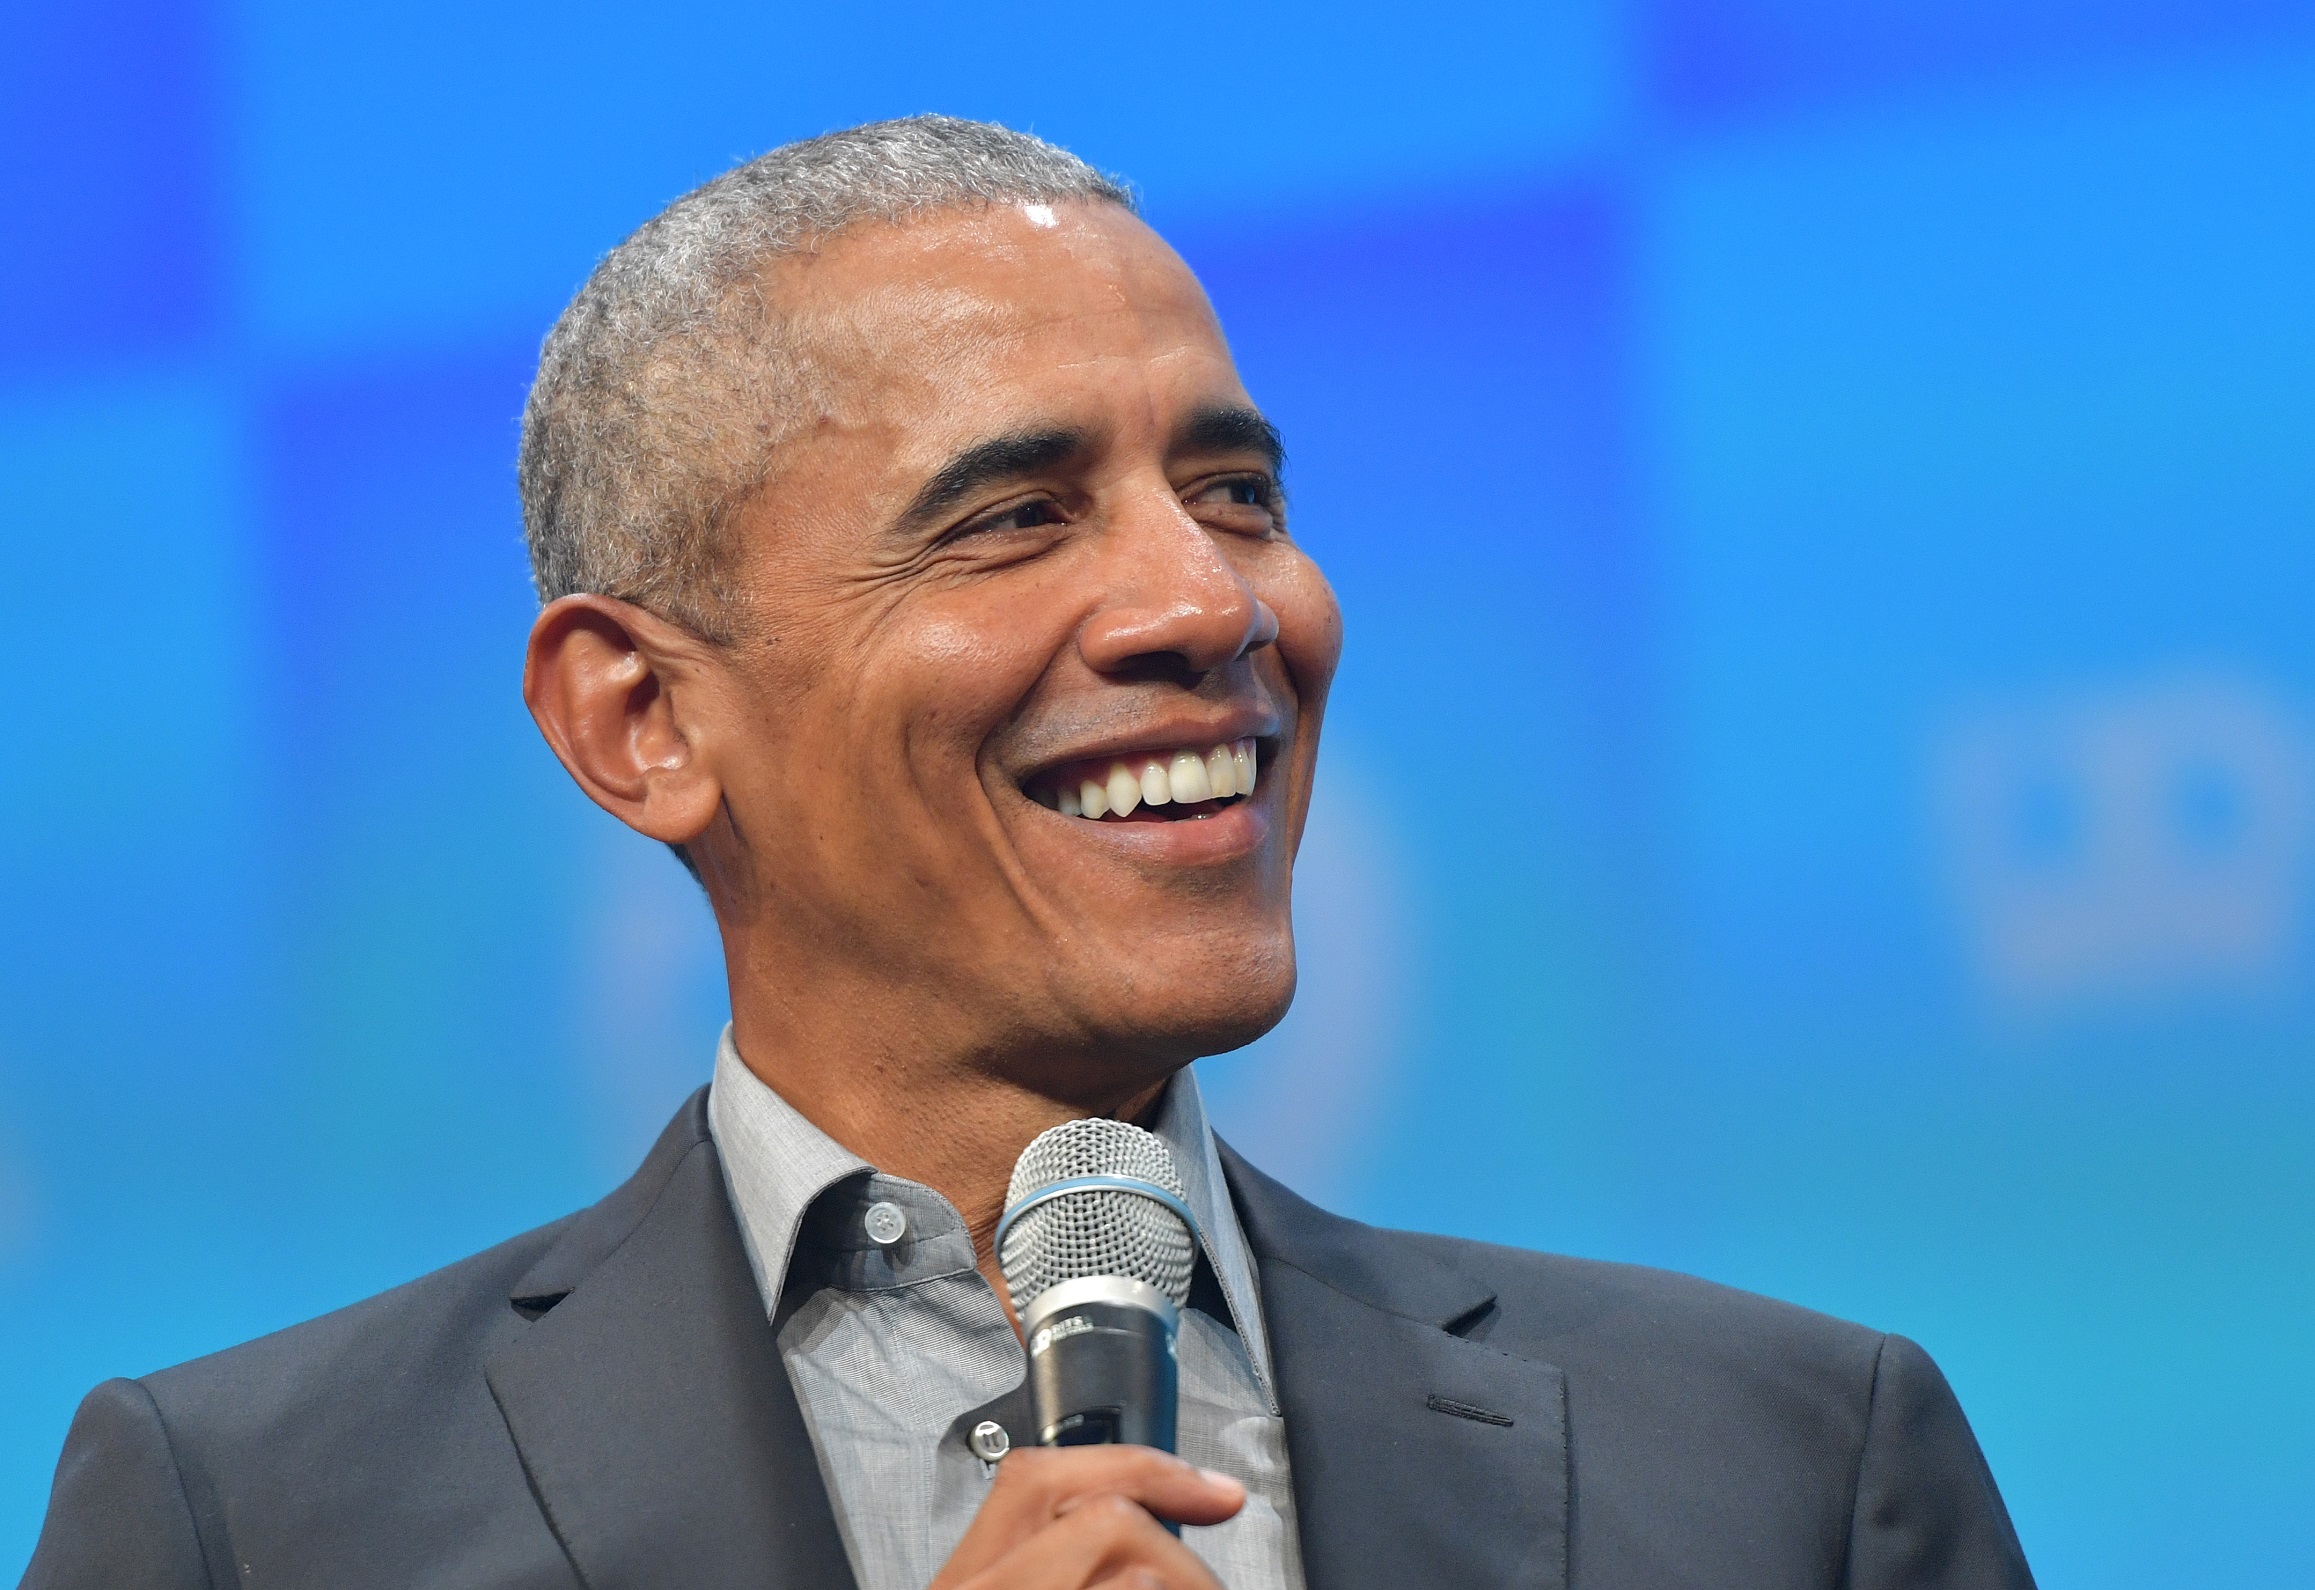 Barack Obama Net Worth, Bio, Awards and Earnings